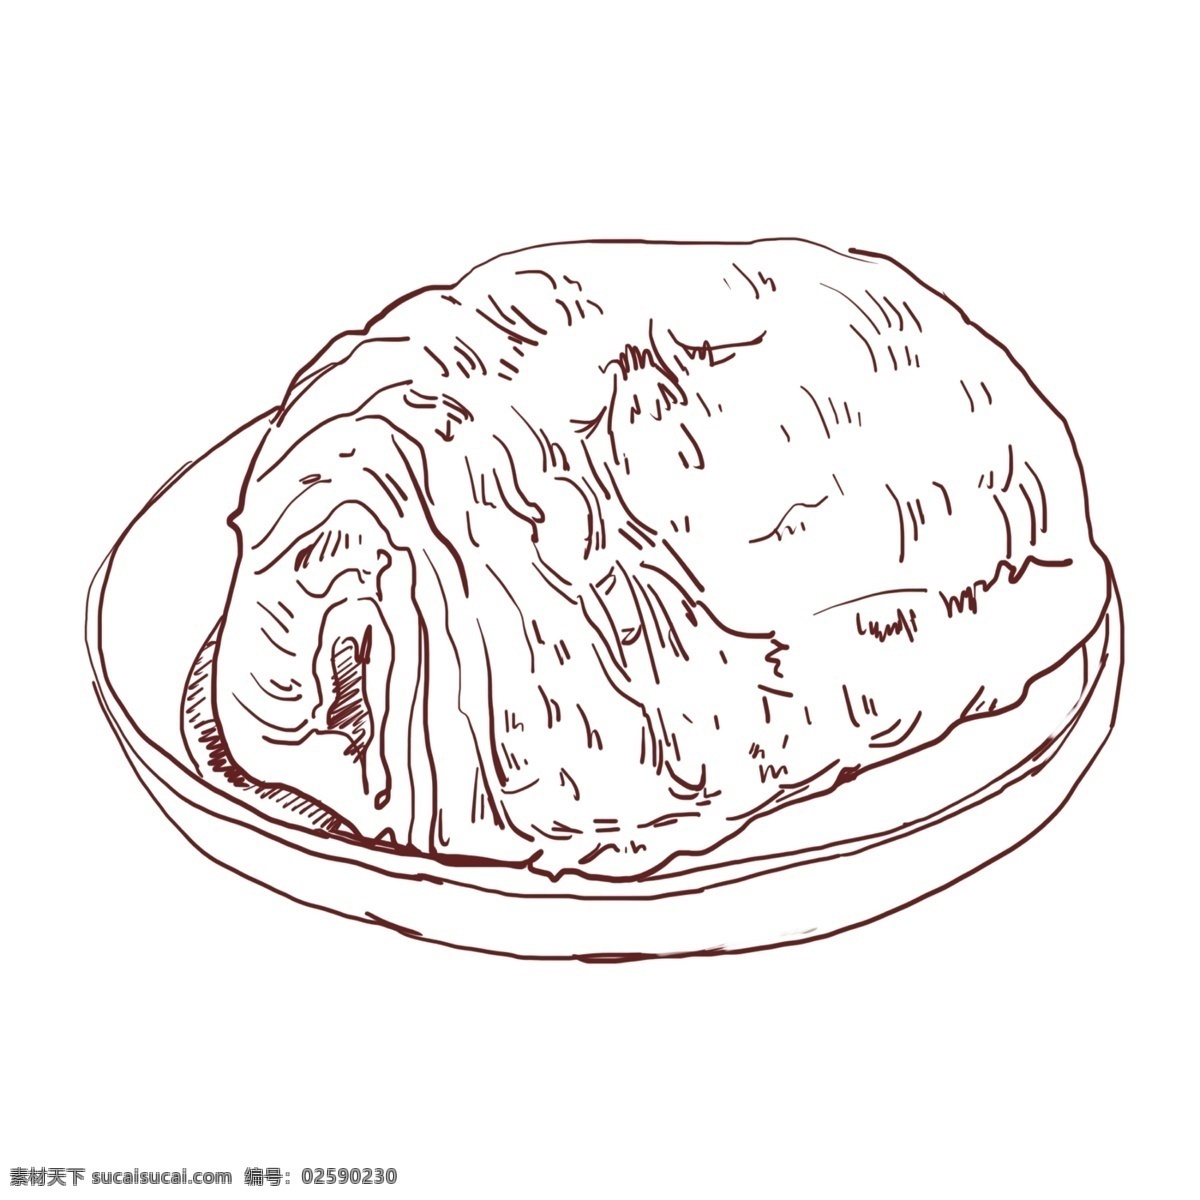 线描 手绘 面包 插画 手绘面包插画 线描面包插画 美味的面包 线描食物 线描美食 手绘美食插画